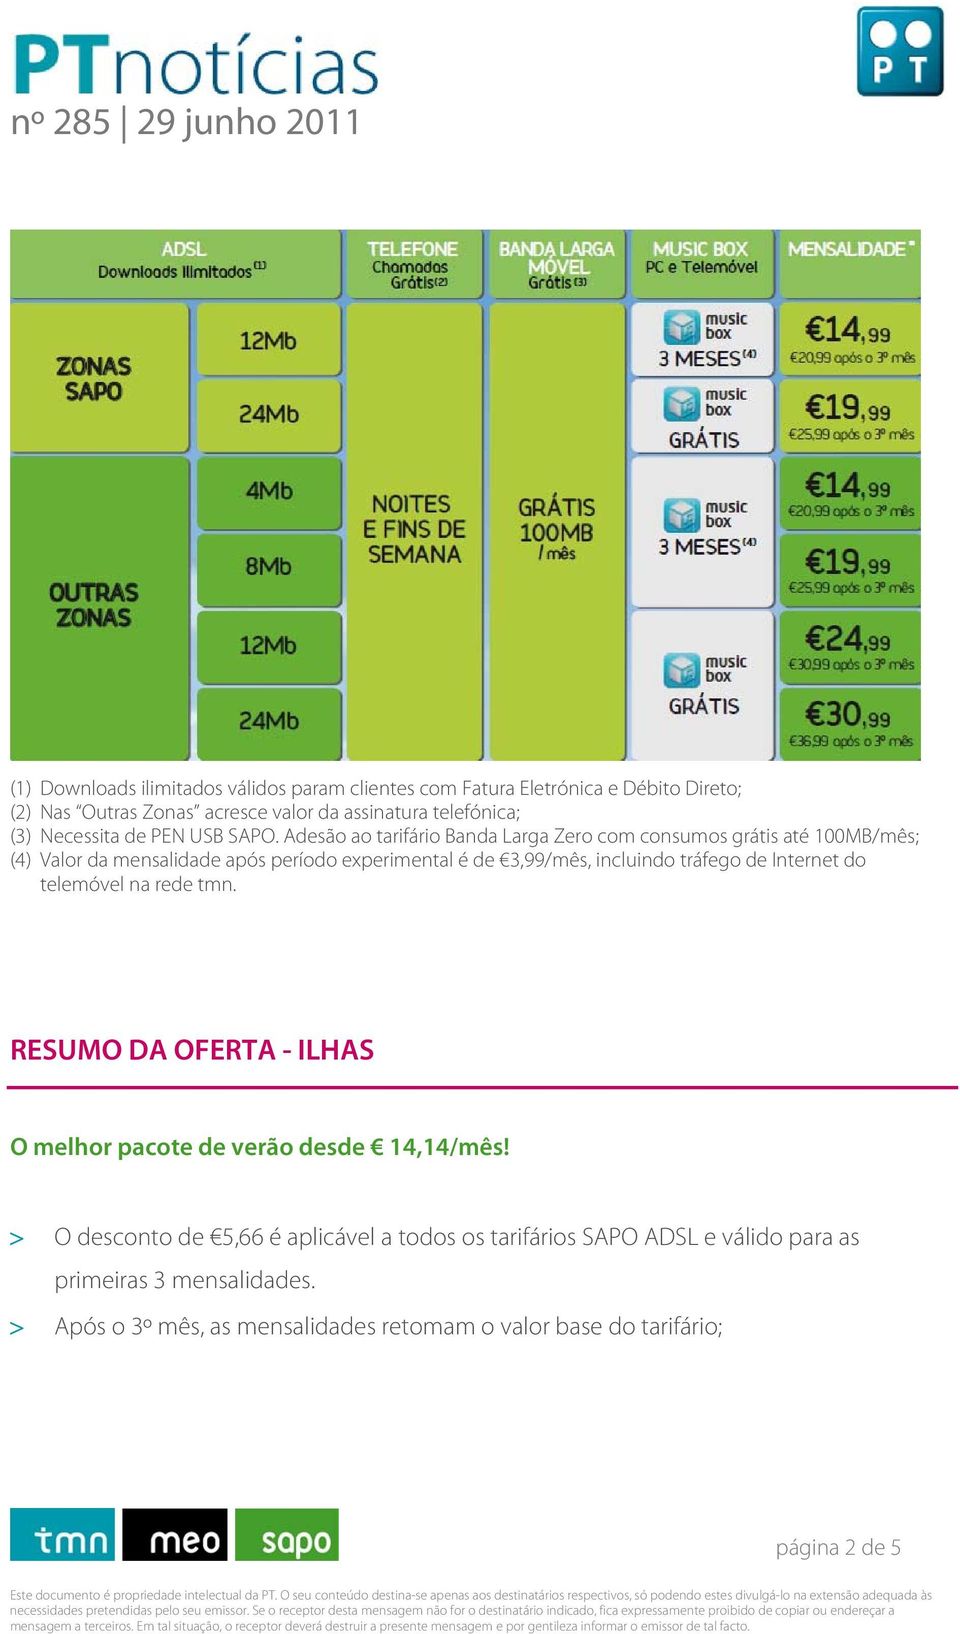 Adesão ao tarifário Banda Larga Zero com consumos grátis até 100MB/mês; (4) Valor da mensalidade após período experimental é de 3,99/mês, incluindo tráfego